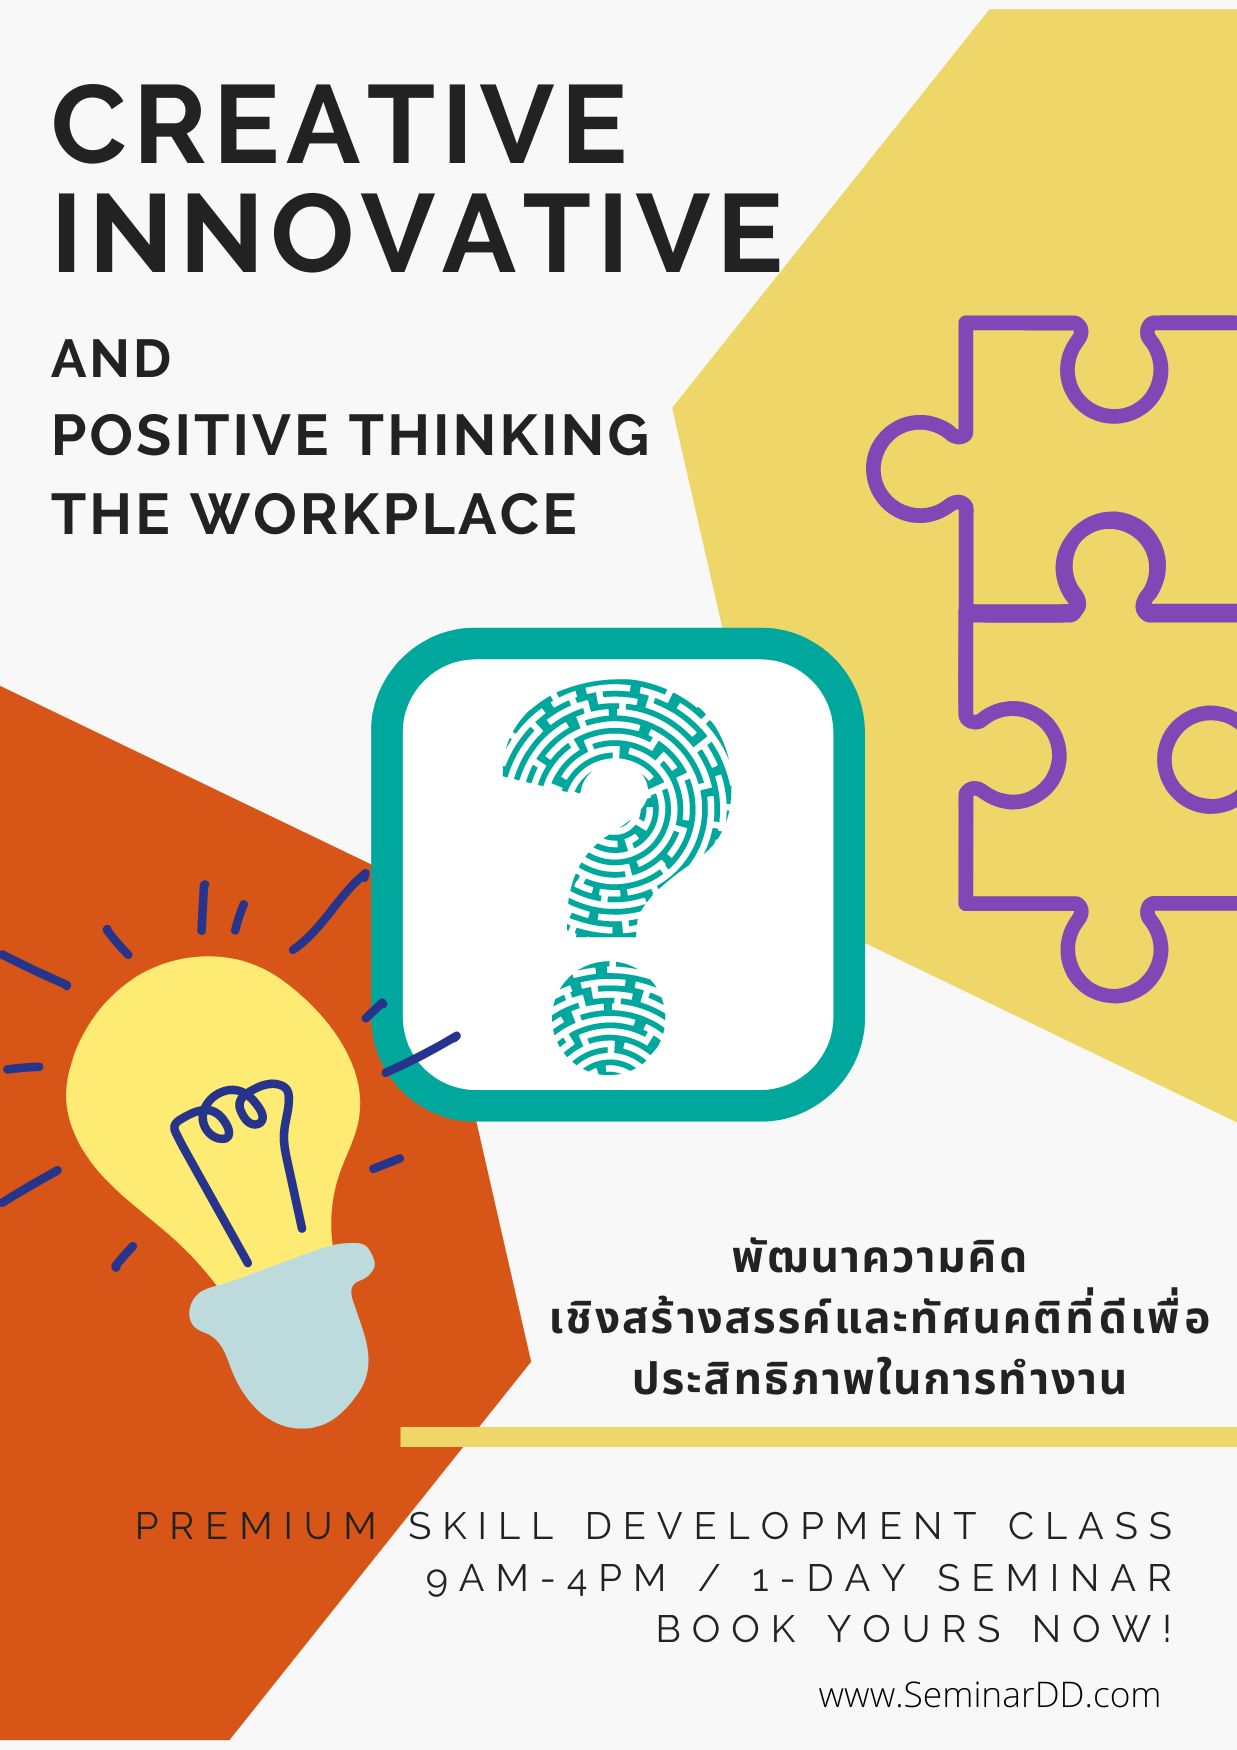 Online by Zoom หลักสูตร หลักสูตร พัฒนาความคิดเชิงสร้างสรรค์ และทัศนคติที่ดีเพื่อประสิทธิภาพการทำงาน ( Creative Innovative and Positive Thinking in the Workplace ) - อบรมในรูปแบบ online ผ่าน zoom